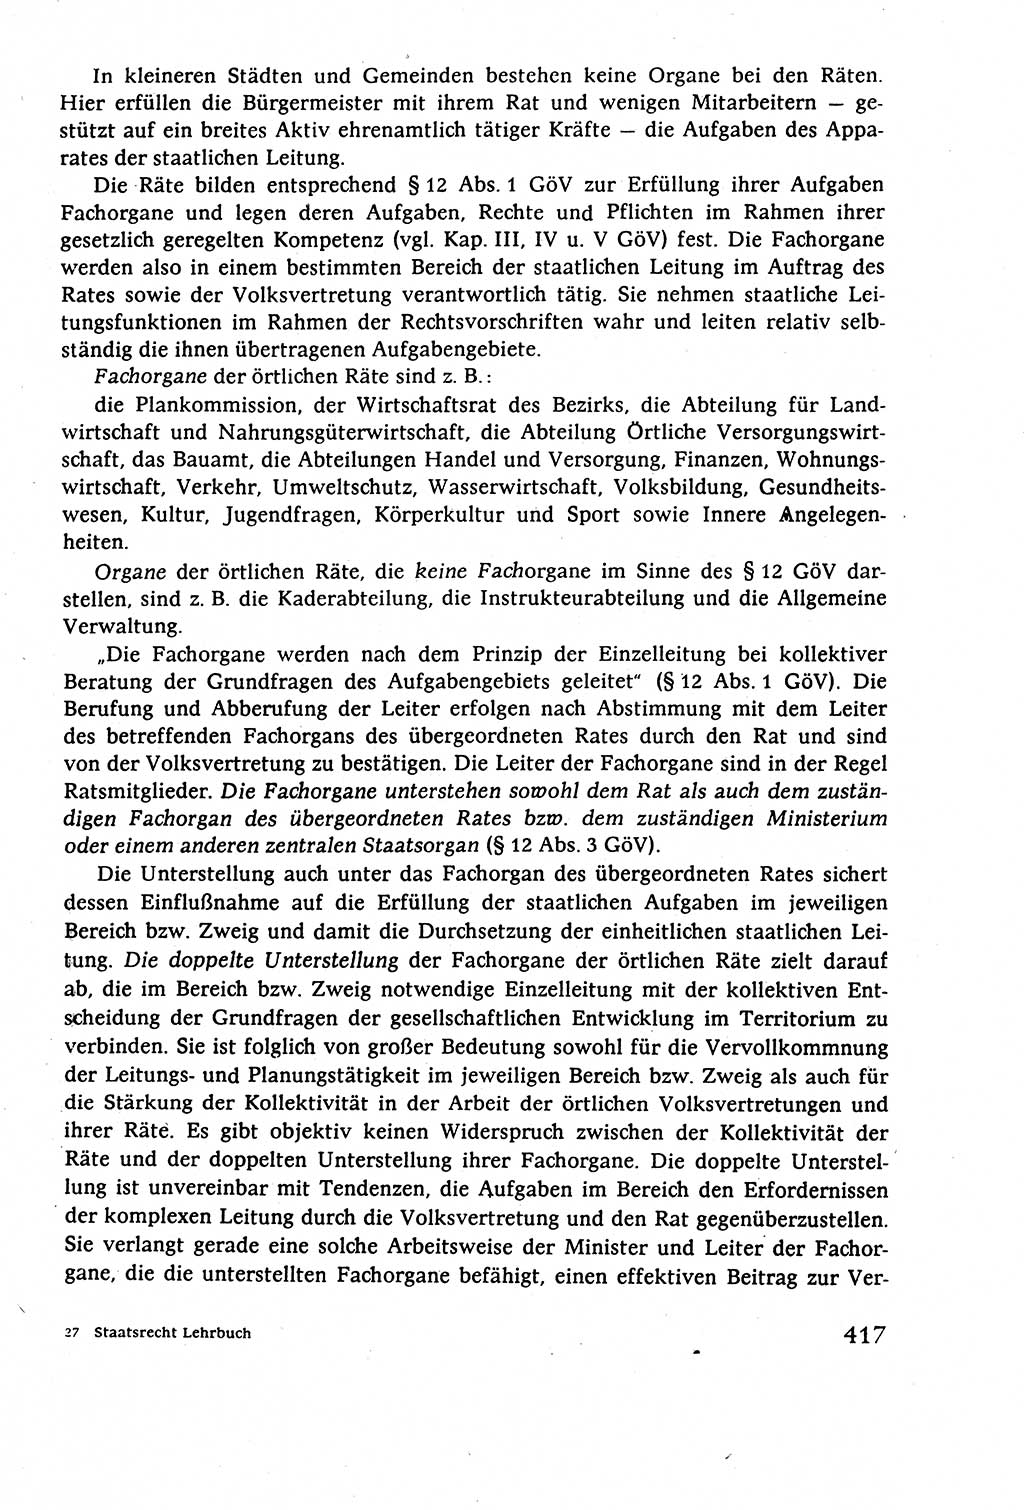 Staatsrecht der DDR (Deutsche Demokratische Republik), Lehrbuch 1977, Seite 417 (St.-R. DDR Lb. 1977, S. 417)